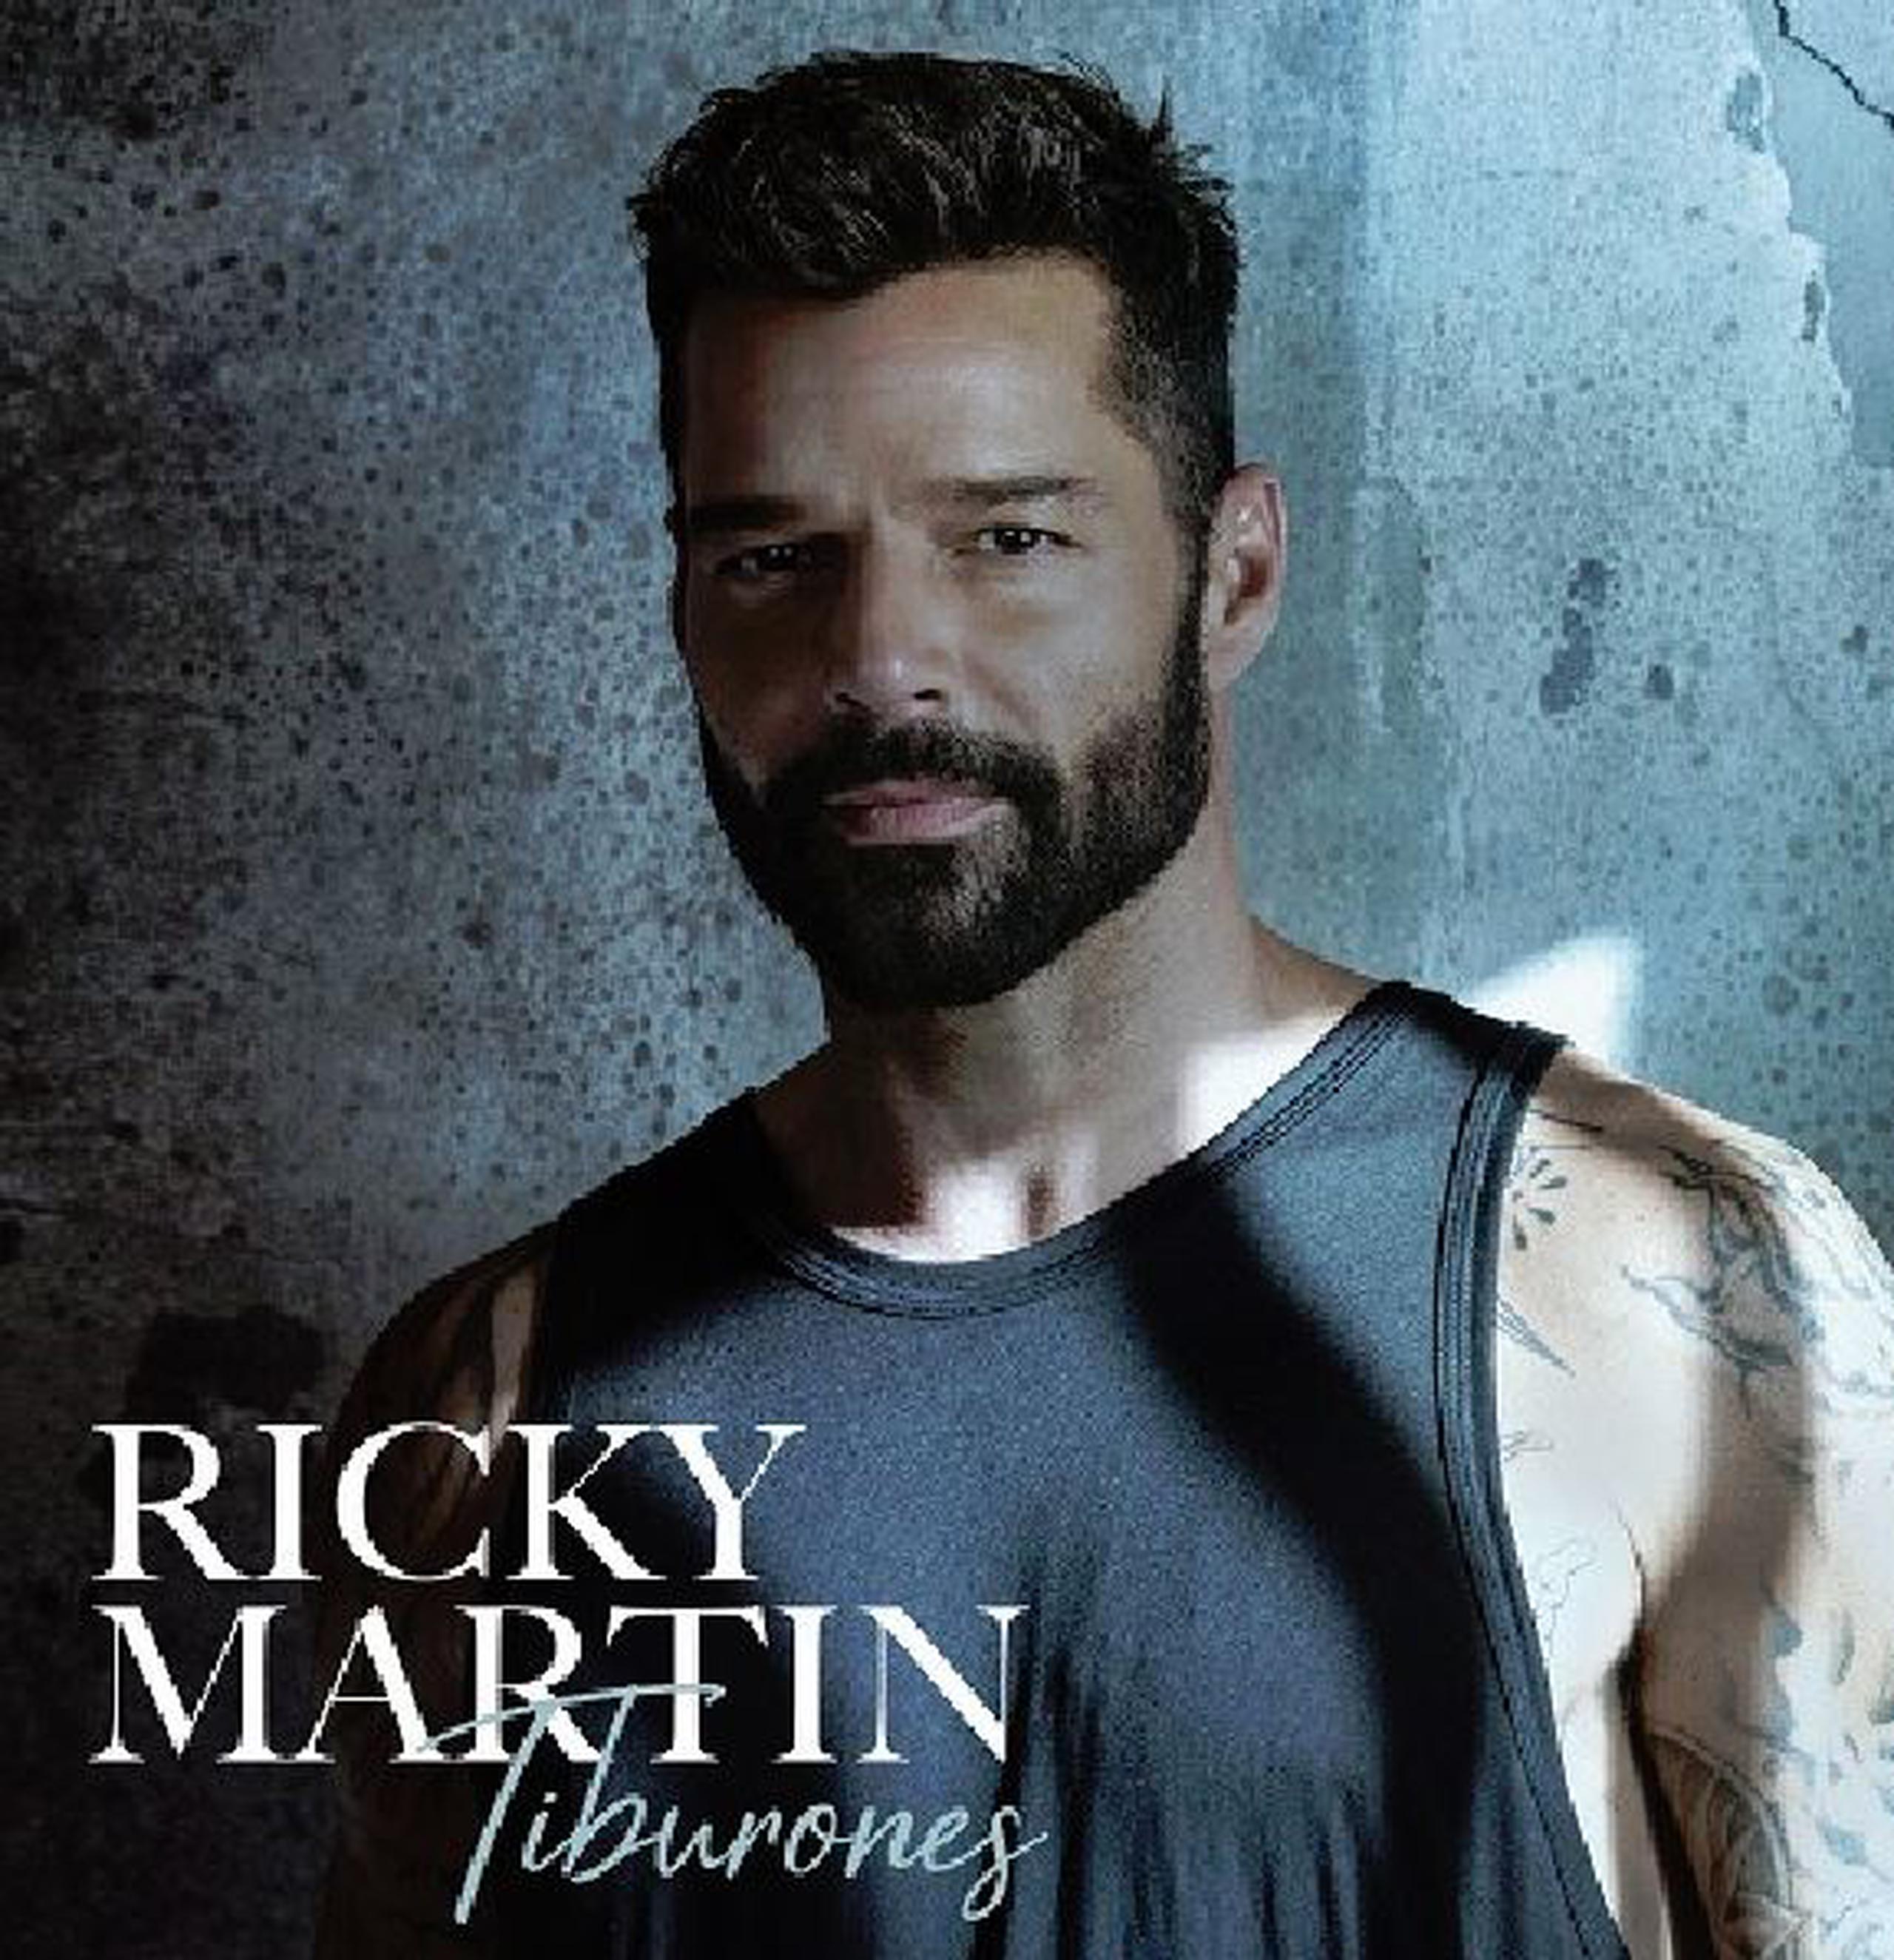 El cantante Ricky Martin estrena el sencillo "Tiburones", del que se desprende un vídeo grabado en Puerto Rico. (Suministrada)